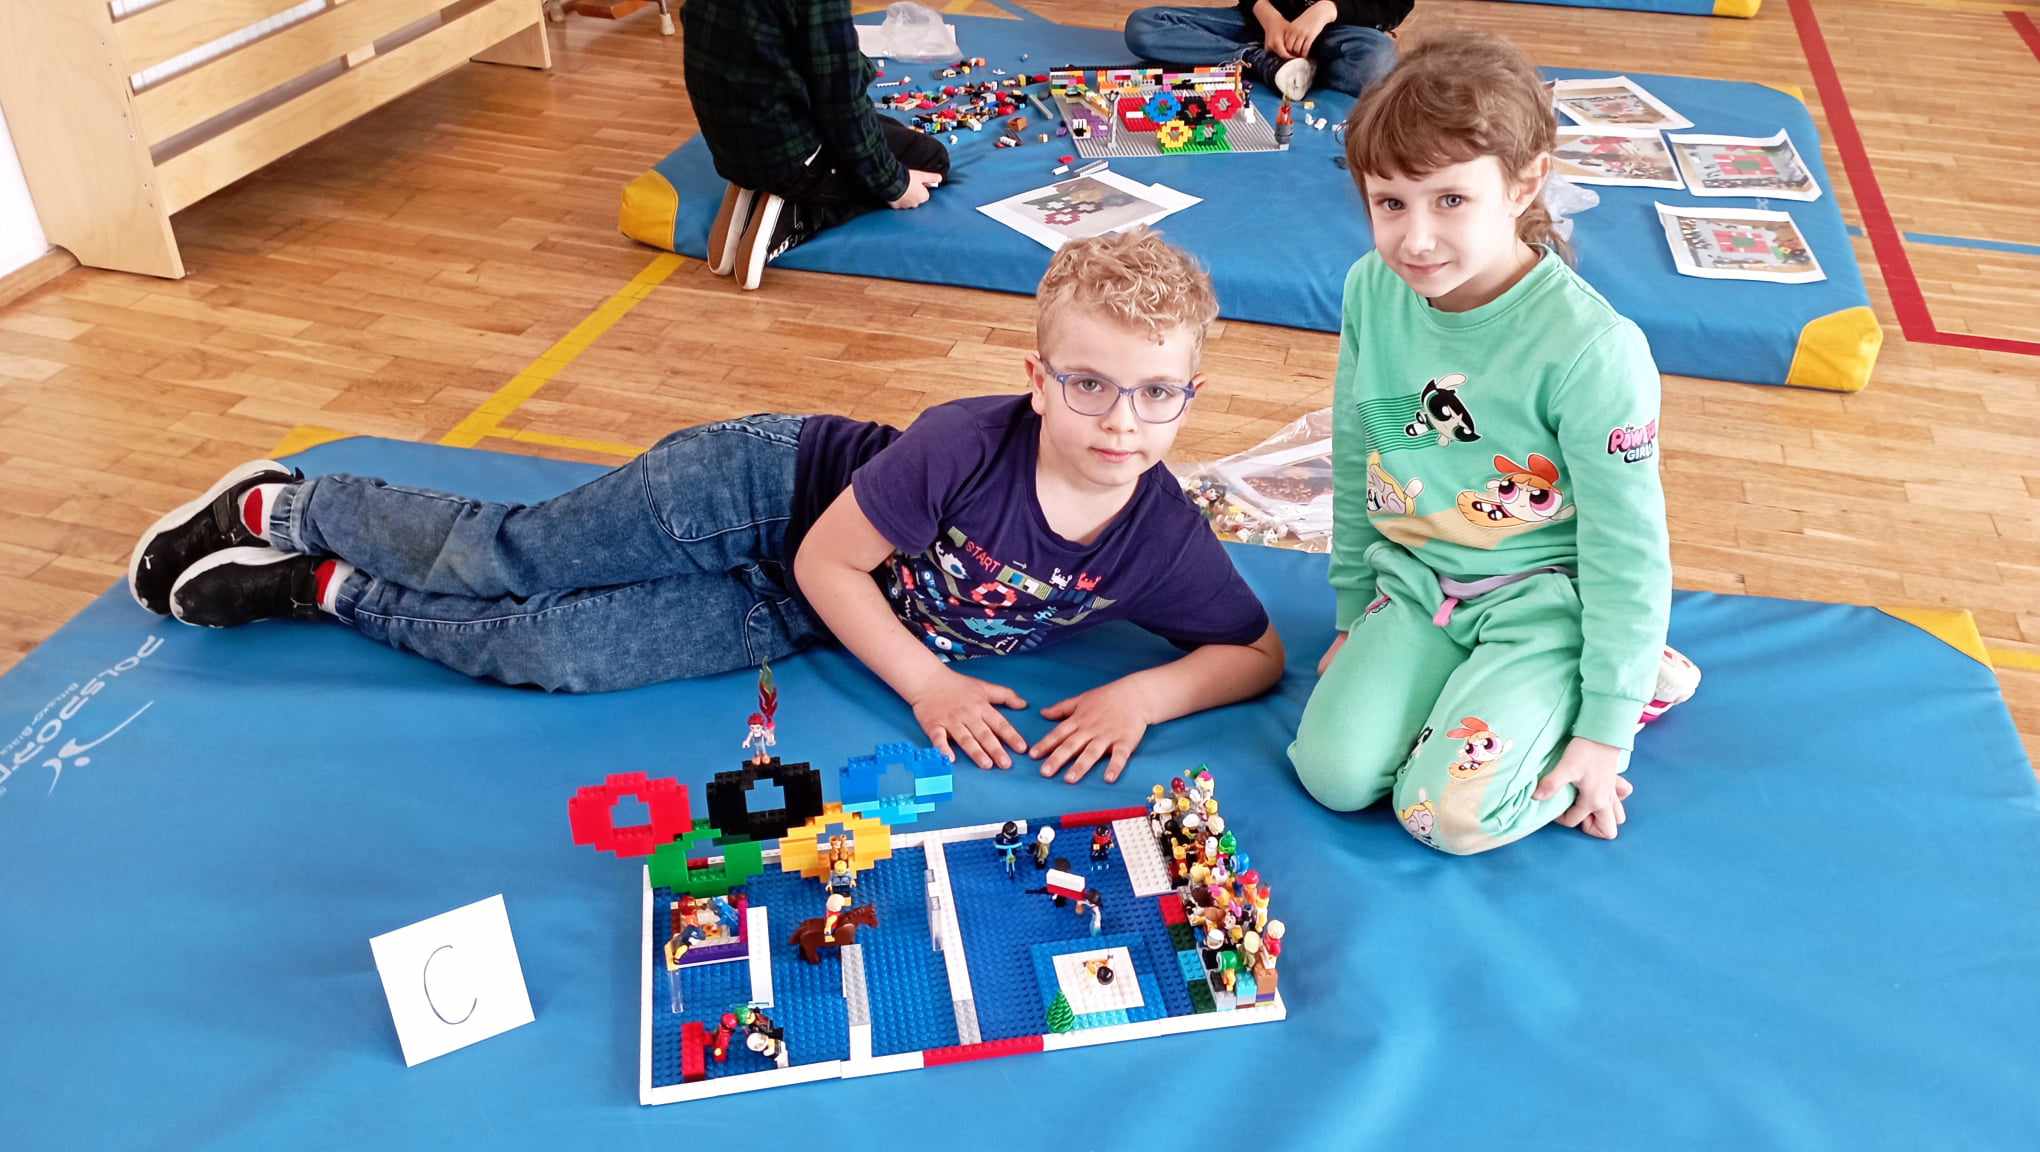 W sali gimnastycznej na niebieskim materacu leży chłopczyk, obok siedzi dziewczynka z klasy 0. Przed nimi stoi ich budowla z klocków LEGO i etykietka z literą C. W tle inny niebieski materac z klockami LEGO i dwojgiem uczniów.